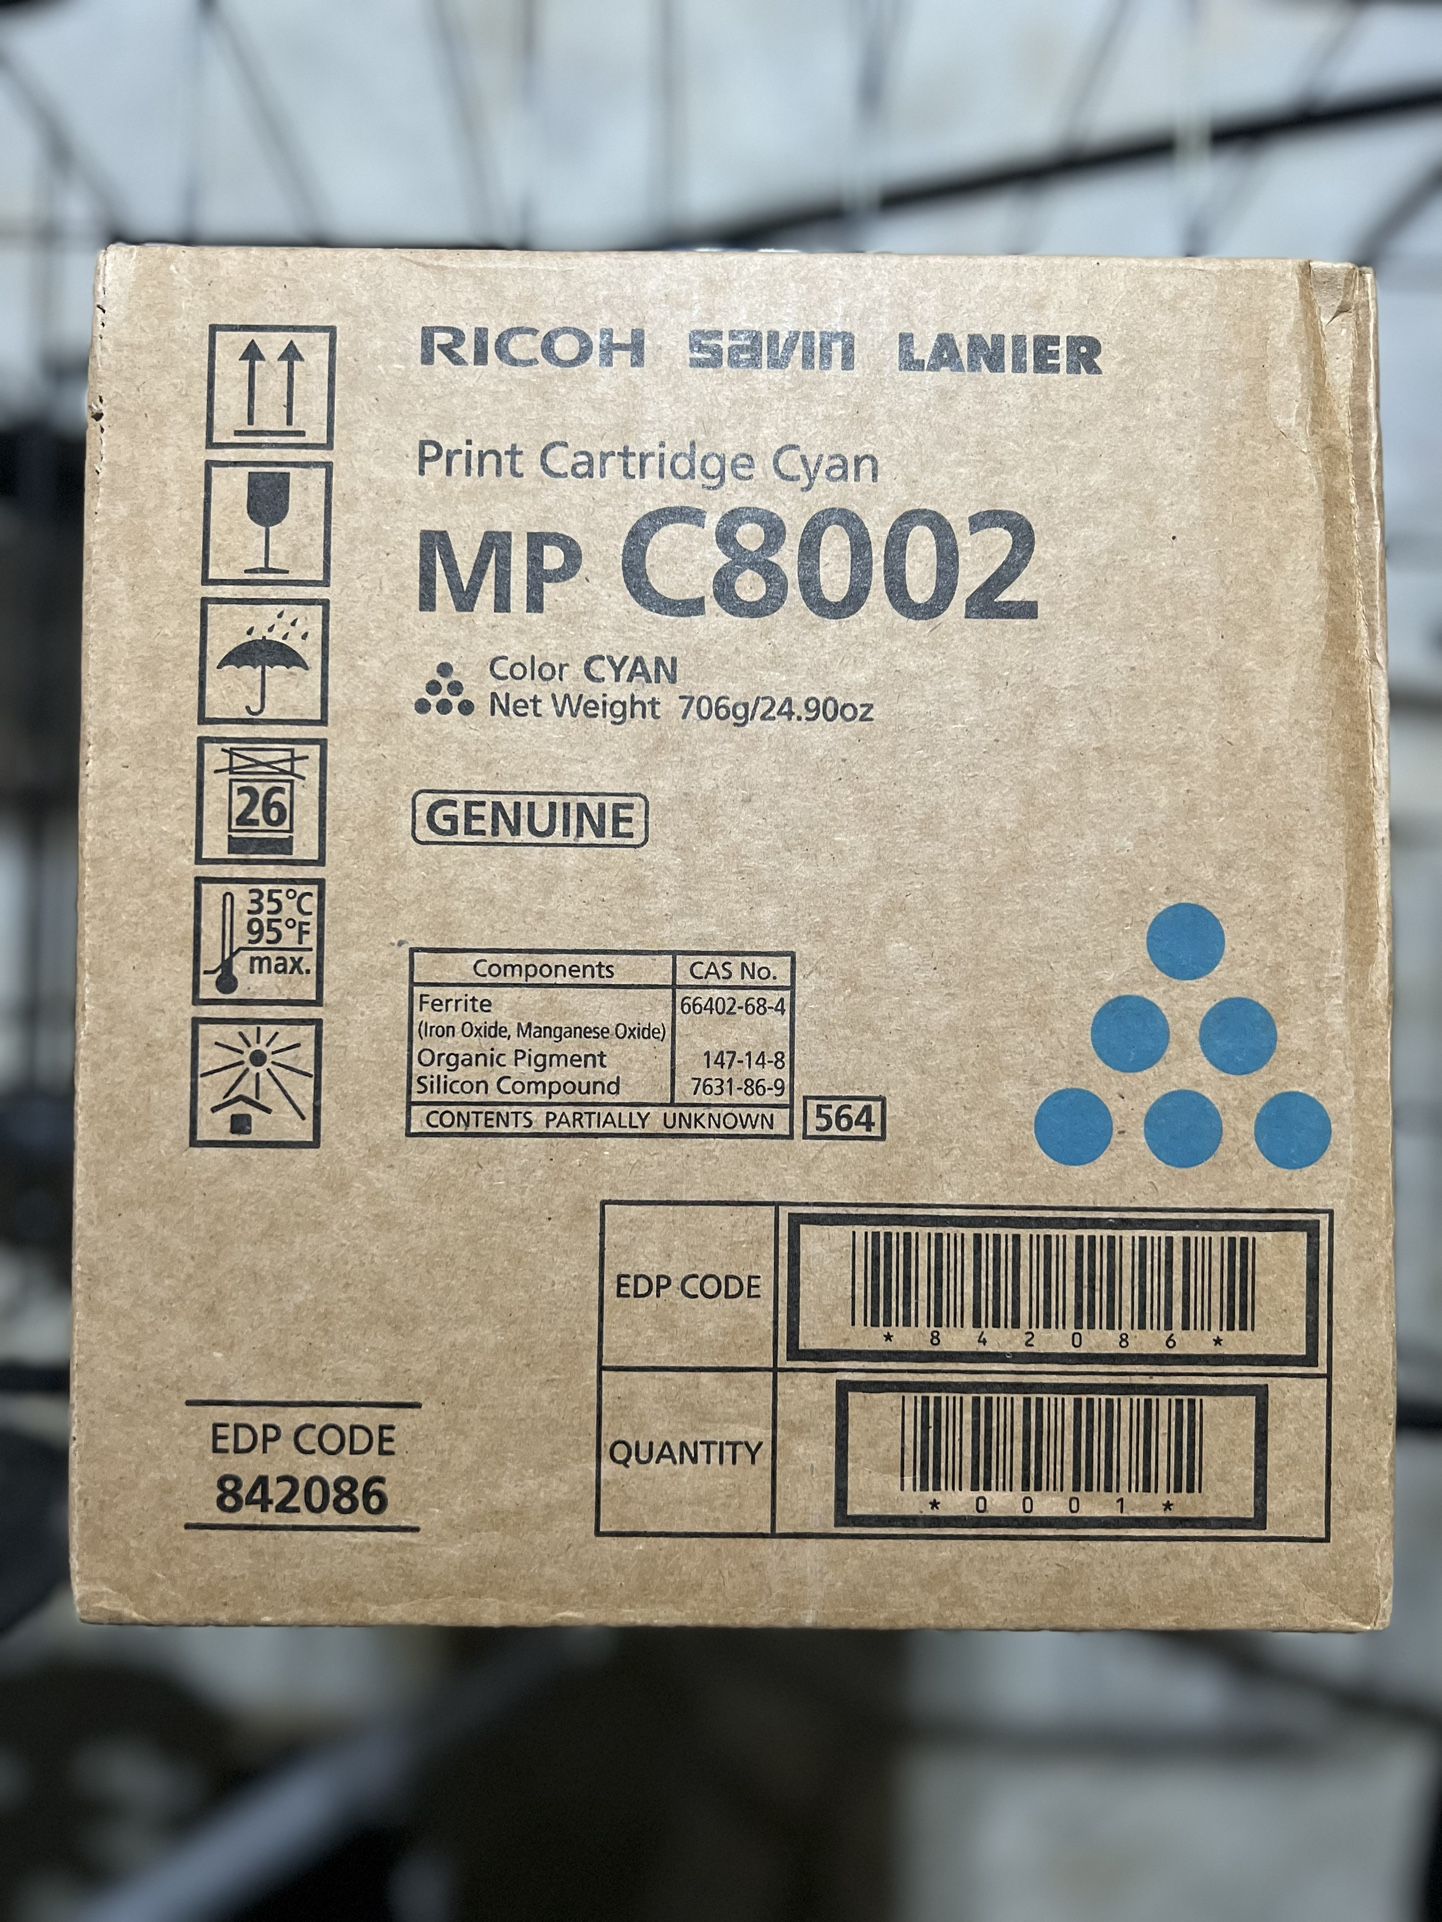 Ricoh Cyan Toner Cartridge for MP C8002 Savin Lanier CYAN